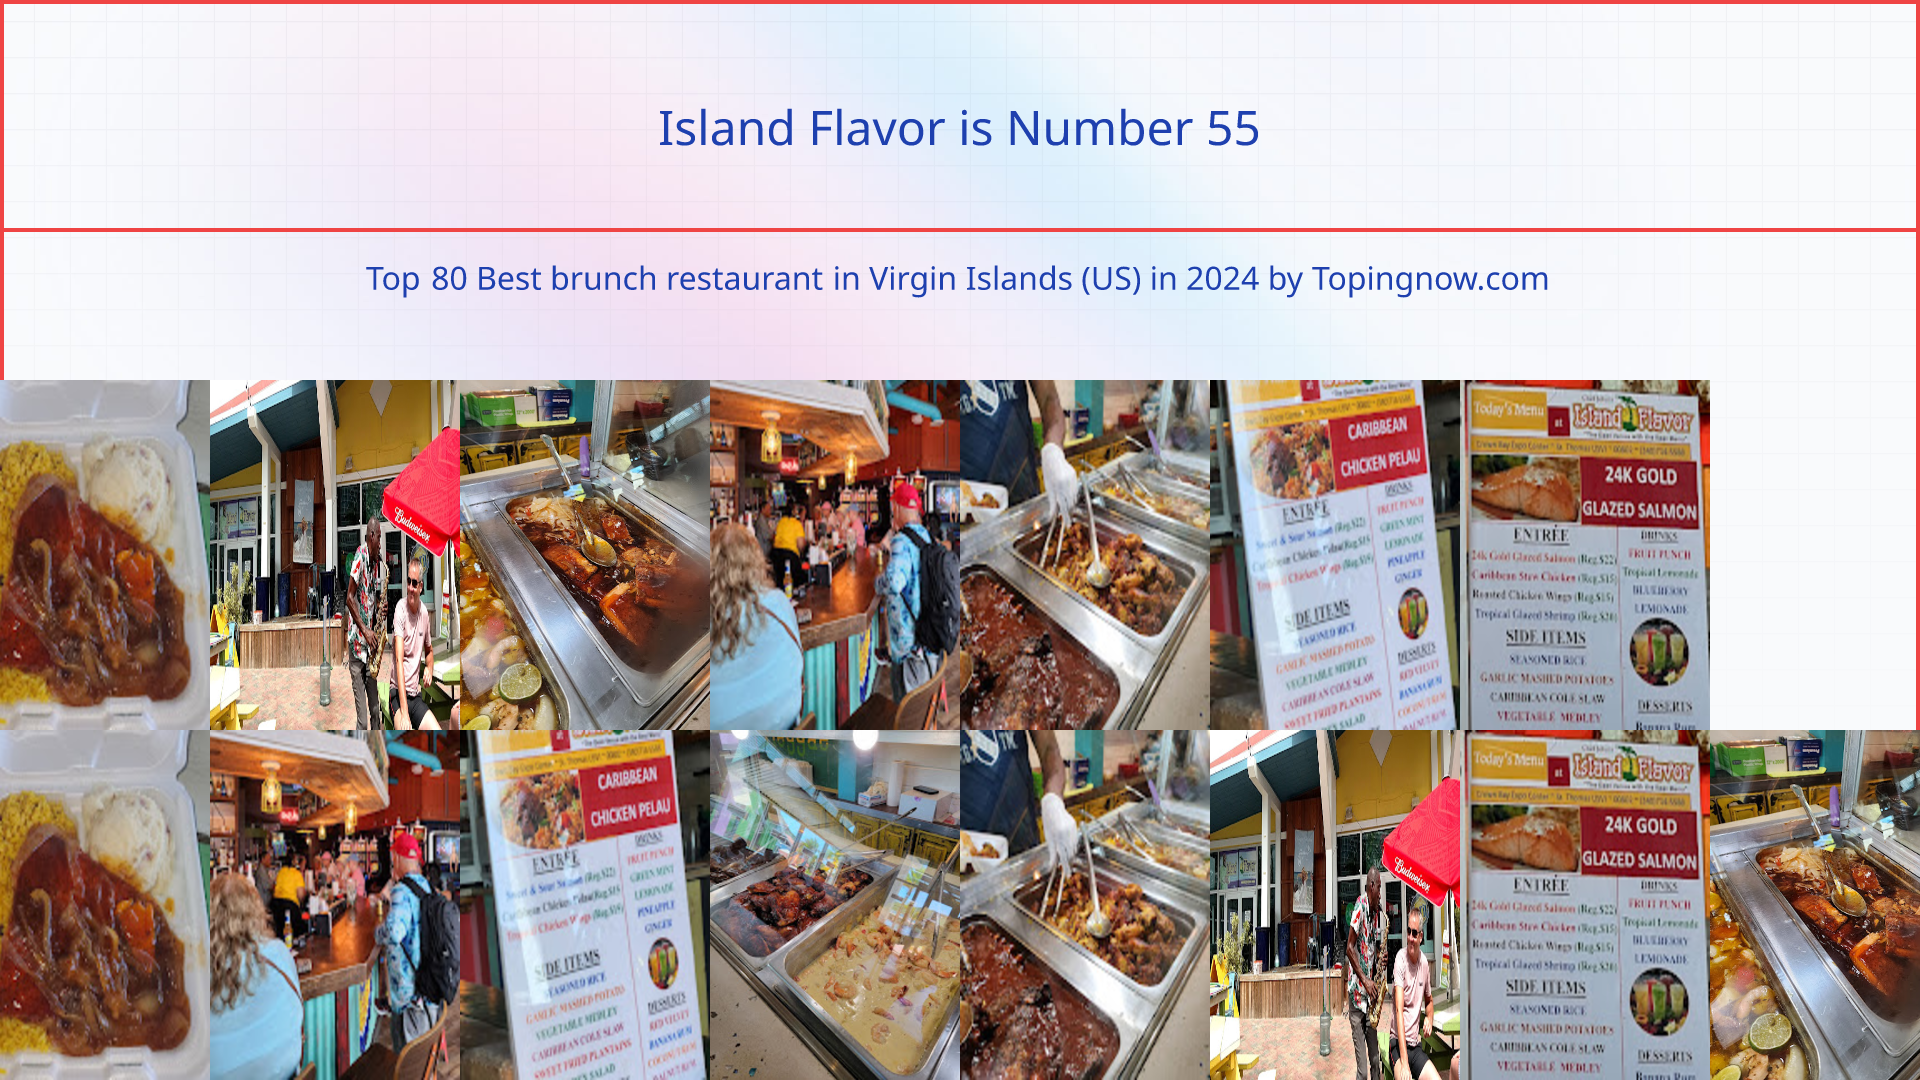 Island Flavor: Top 80 Best brunch restaurant in Virgin Islands (US) in 2024